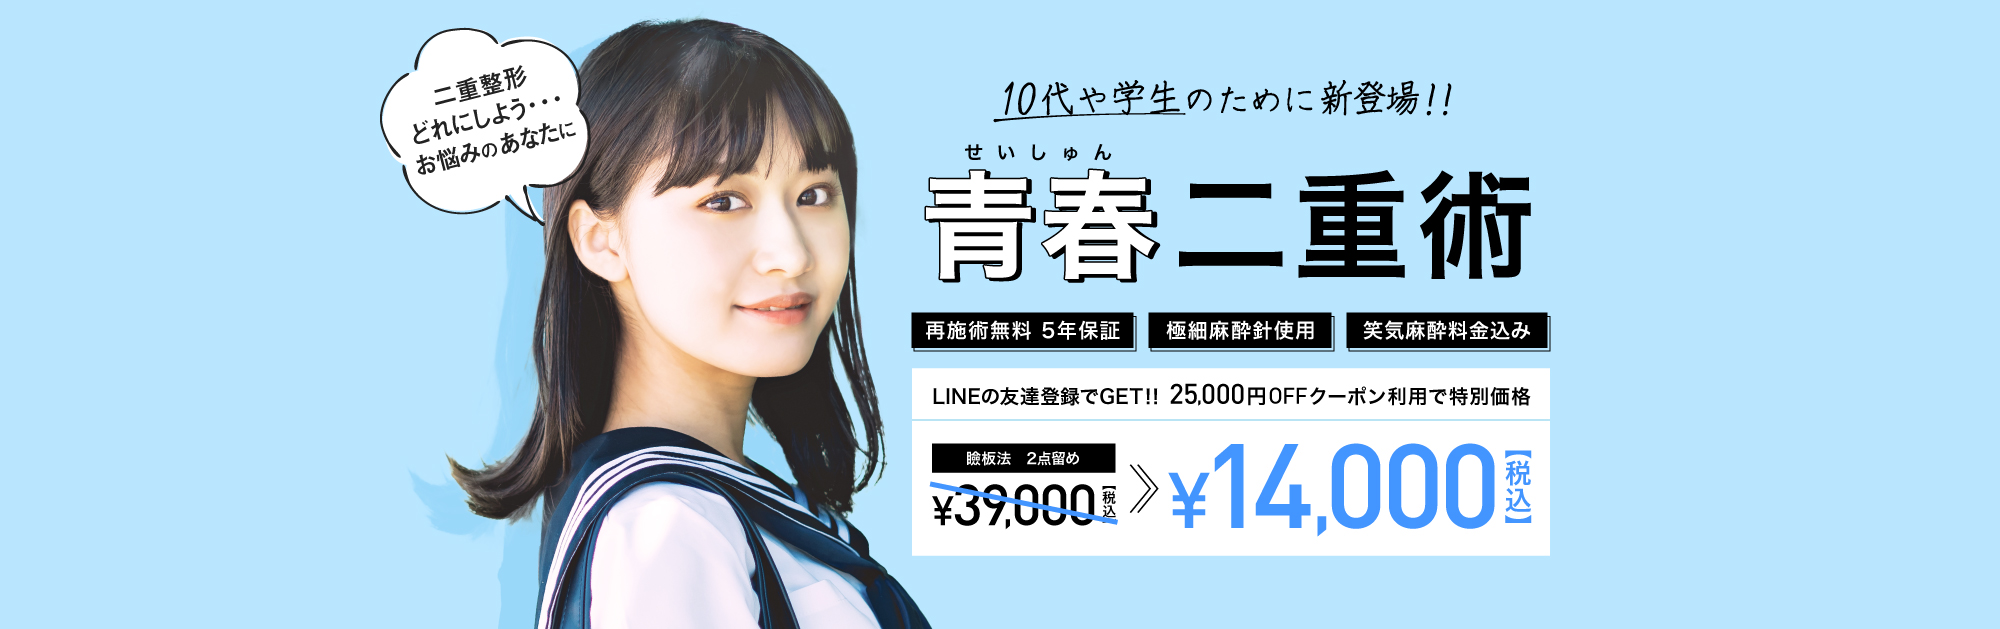 青春二重術 LIMEの友達登録でGET!! 25,0000円OFFクーポン利用で特別価格 ￥14,000(税込)